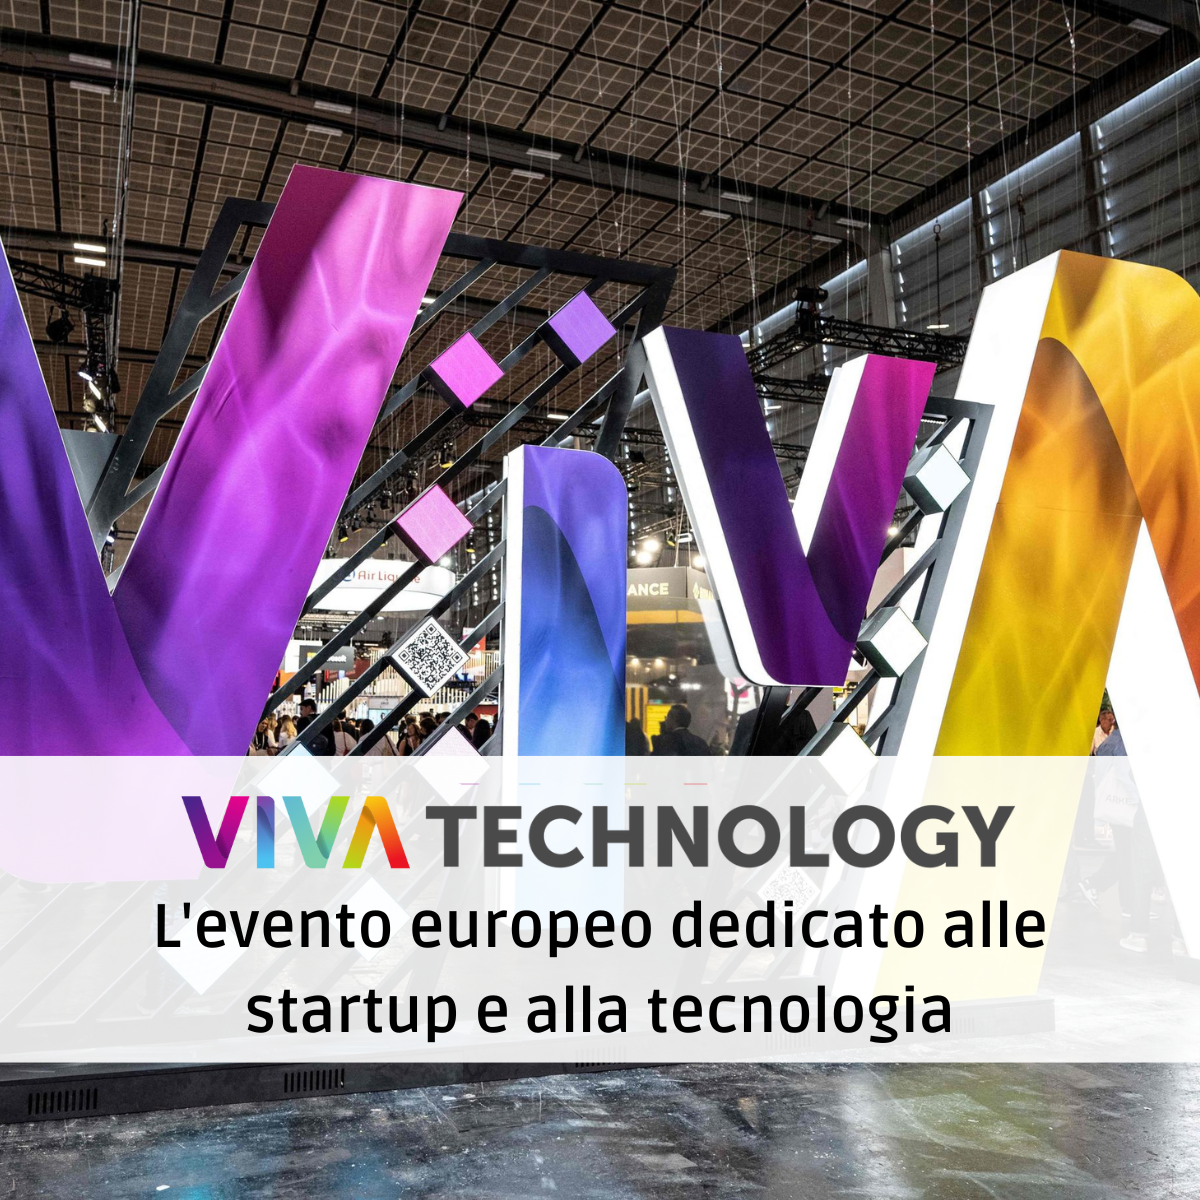 Viva Technology: l’evento europeo dedicato alle startup e alla tecnologia